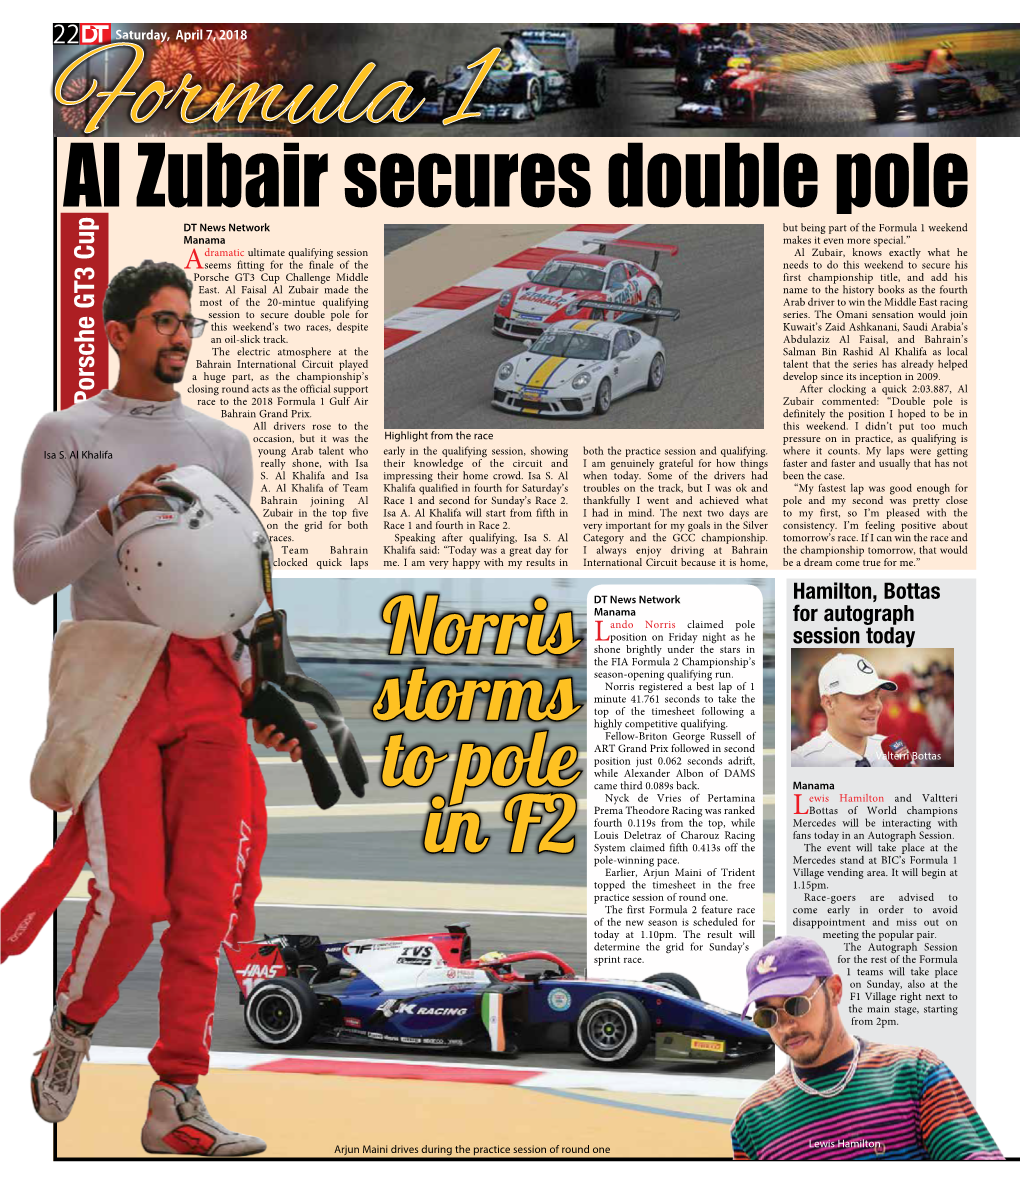 Al Zubair Secures Double Pole